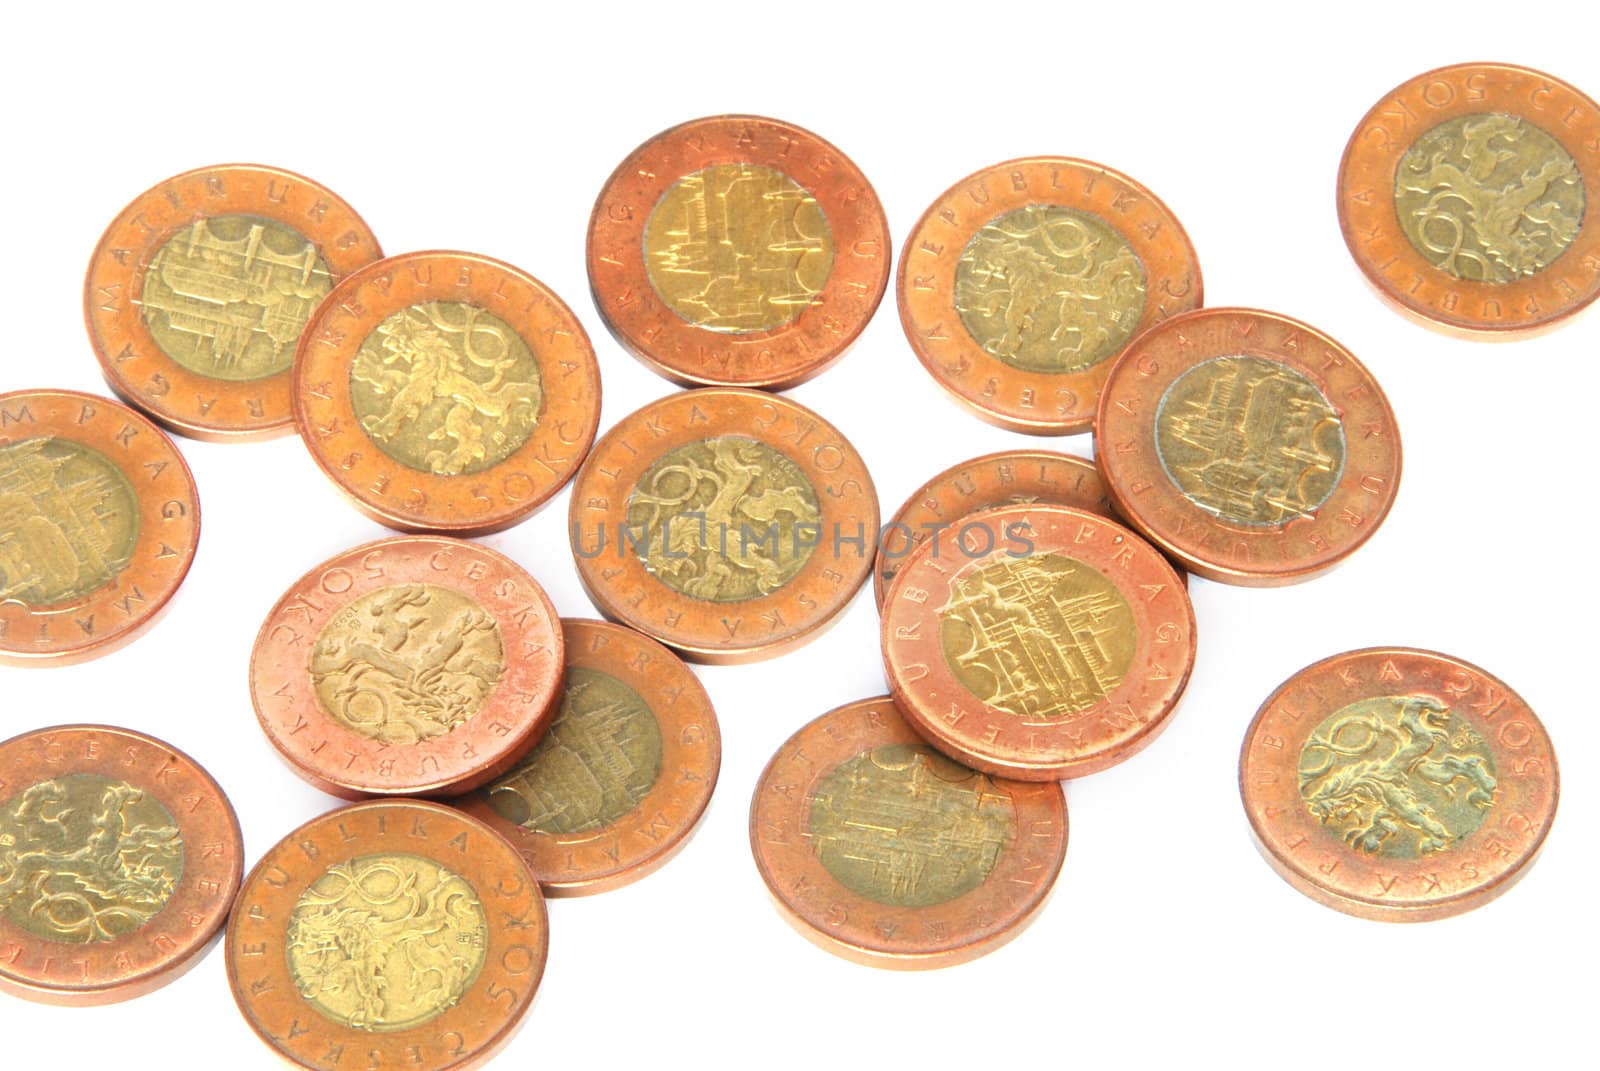 Czech 50 crowns coins - money on a large heap